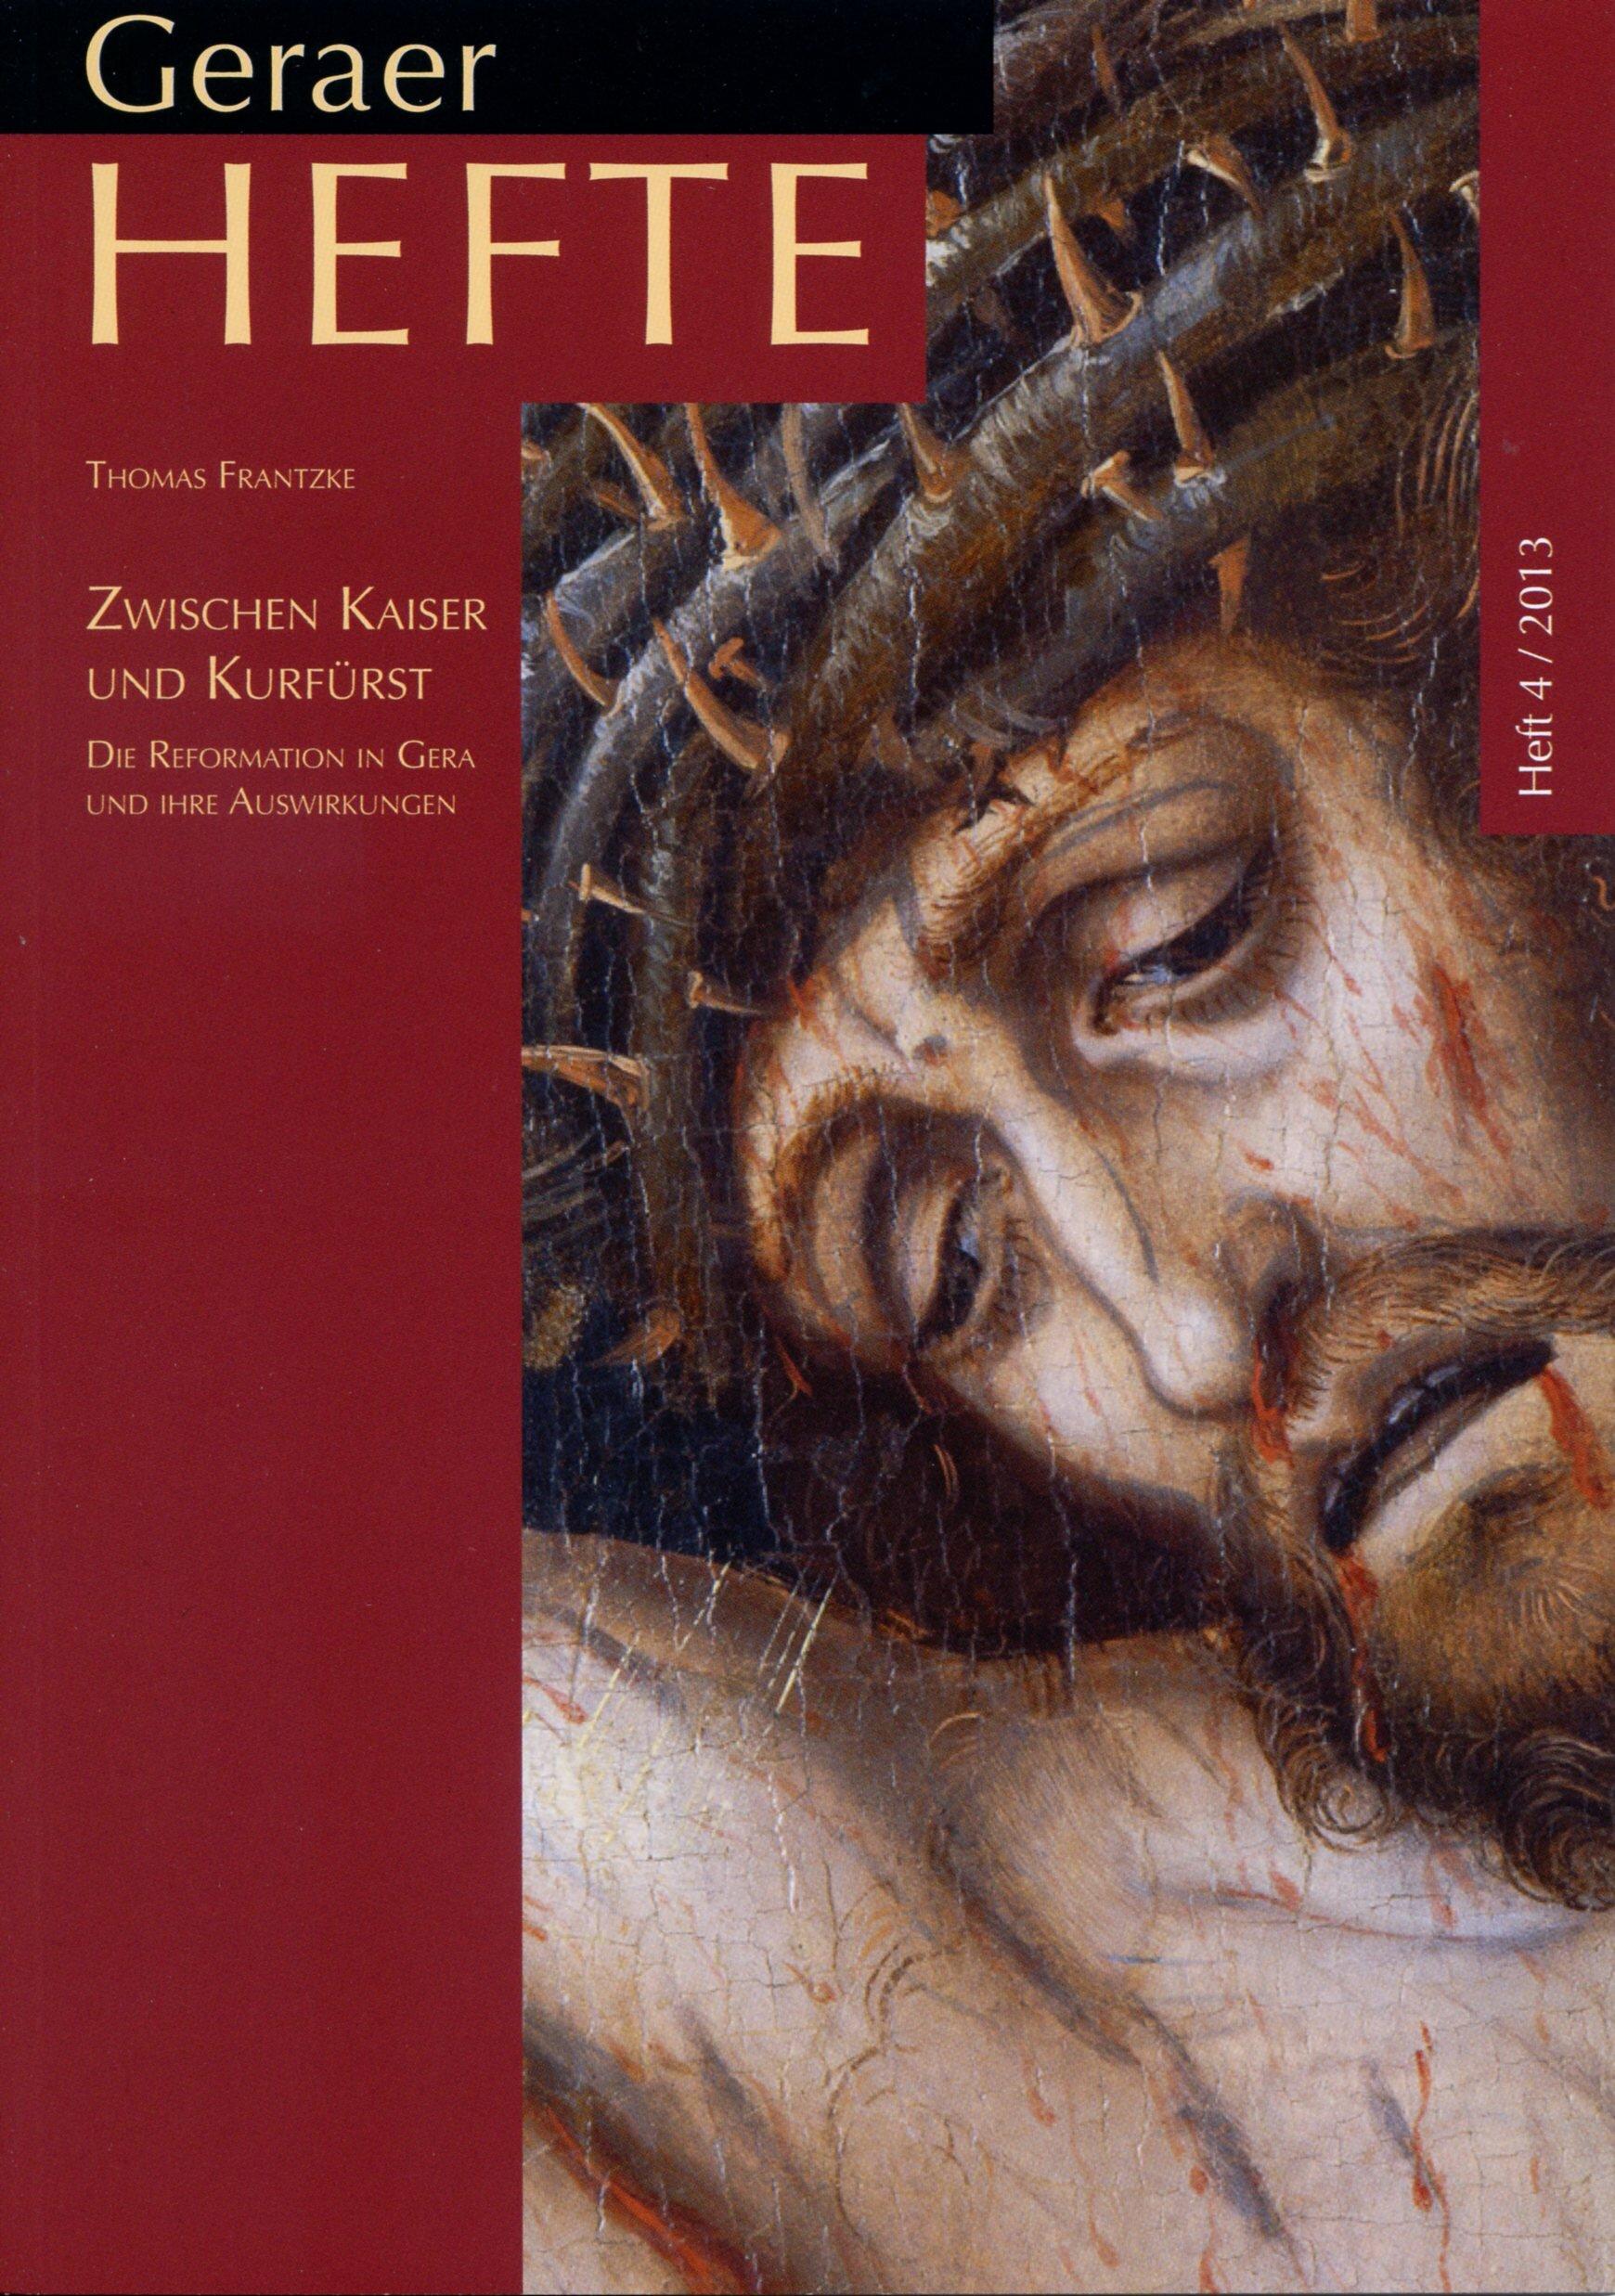 schwarzes, dunkelrotes Cover mit einem Ausschnitt von Jesus Christus aus der Altartafel 'Postersteiner Kreuzigung' von Lucas Cranach